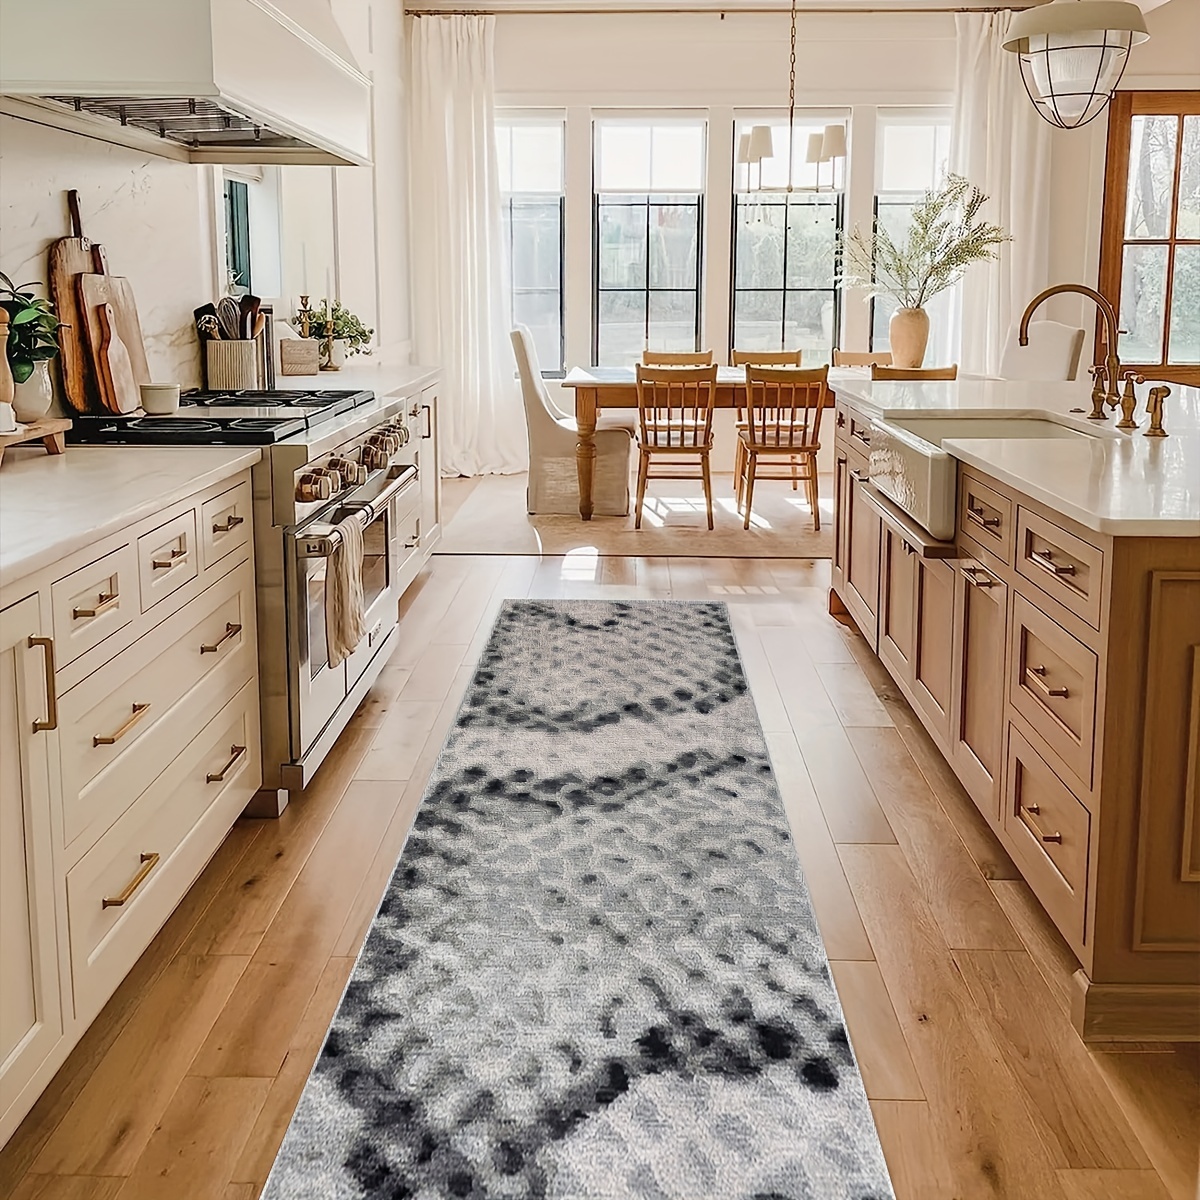 Tapetes de cocina para piso, alfombras de cocina a rayas blancas y grises,  tapete de cocina antifatiga, decoración de cocina, alfombra de pasillo